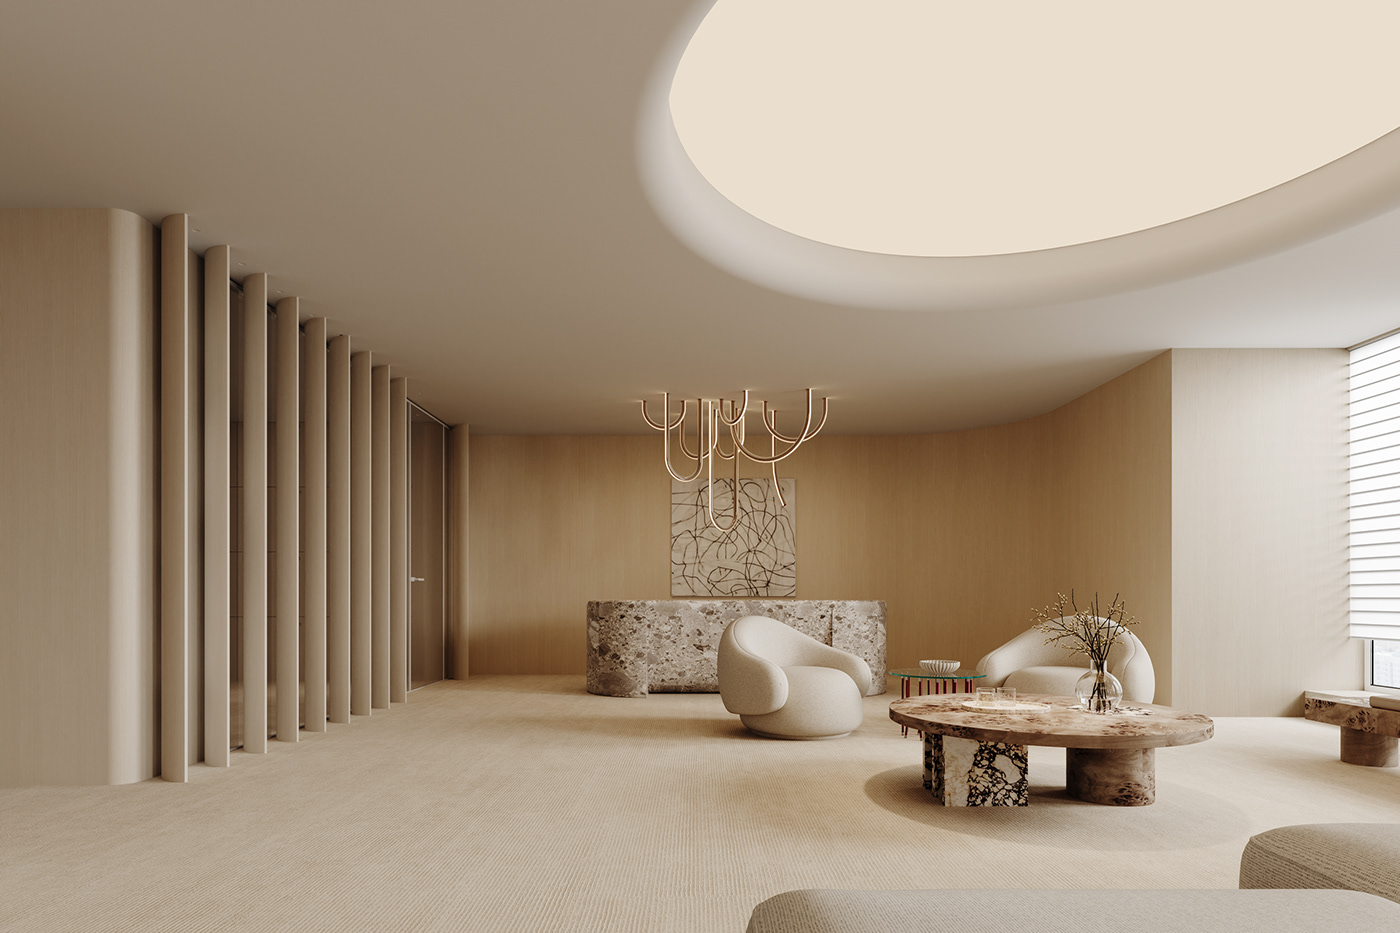 3ds max Render corona CGI vray architecture visualization interior design  modern 3D